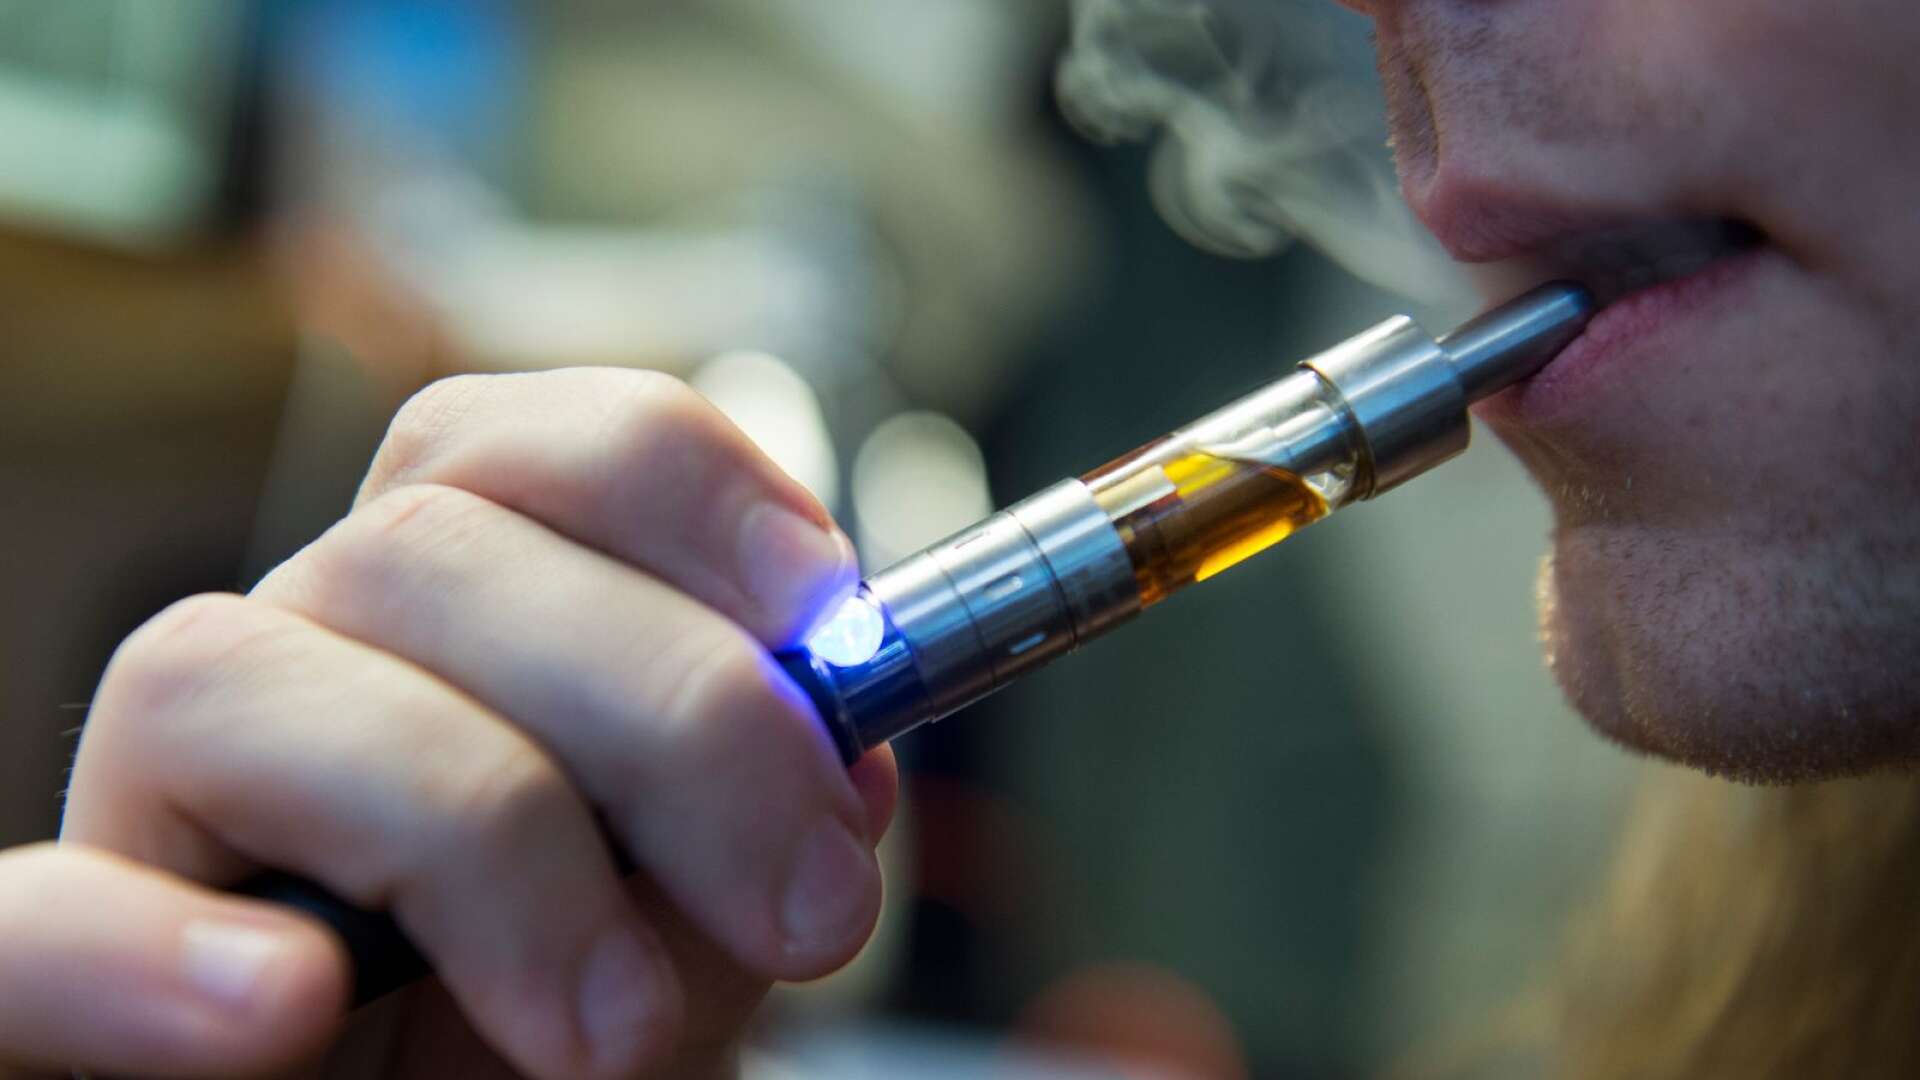 En ny utredning föreslår bland annat att vätskorna i e-cigaretter bara ska få smaka tobak, istället för att ha frukt- eller godissmak, skriver Byrån.